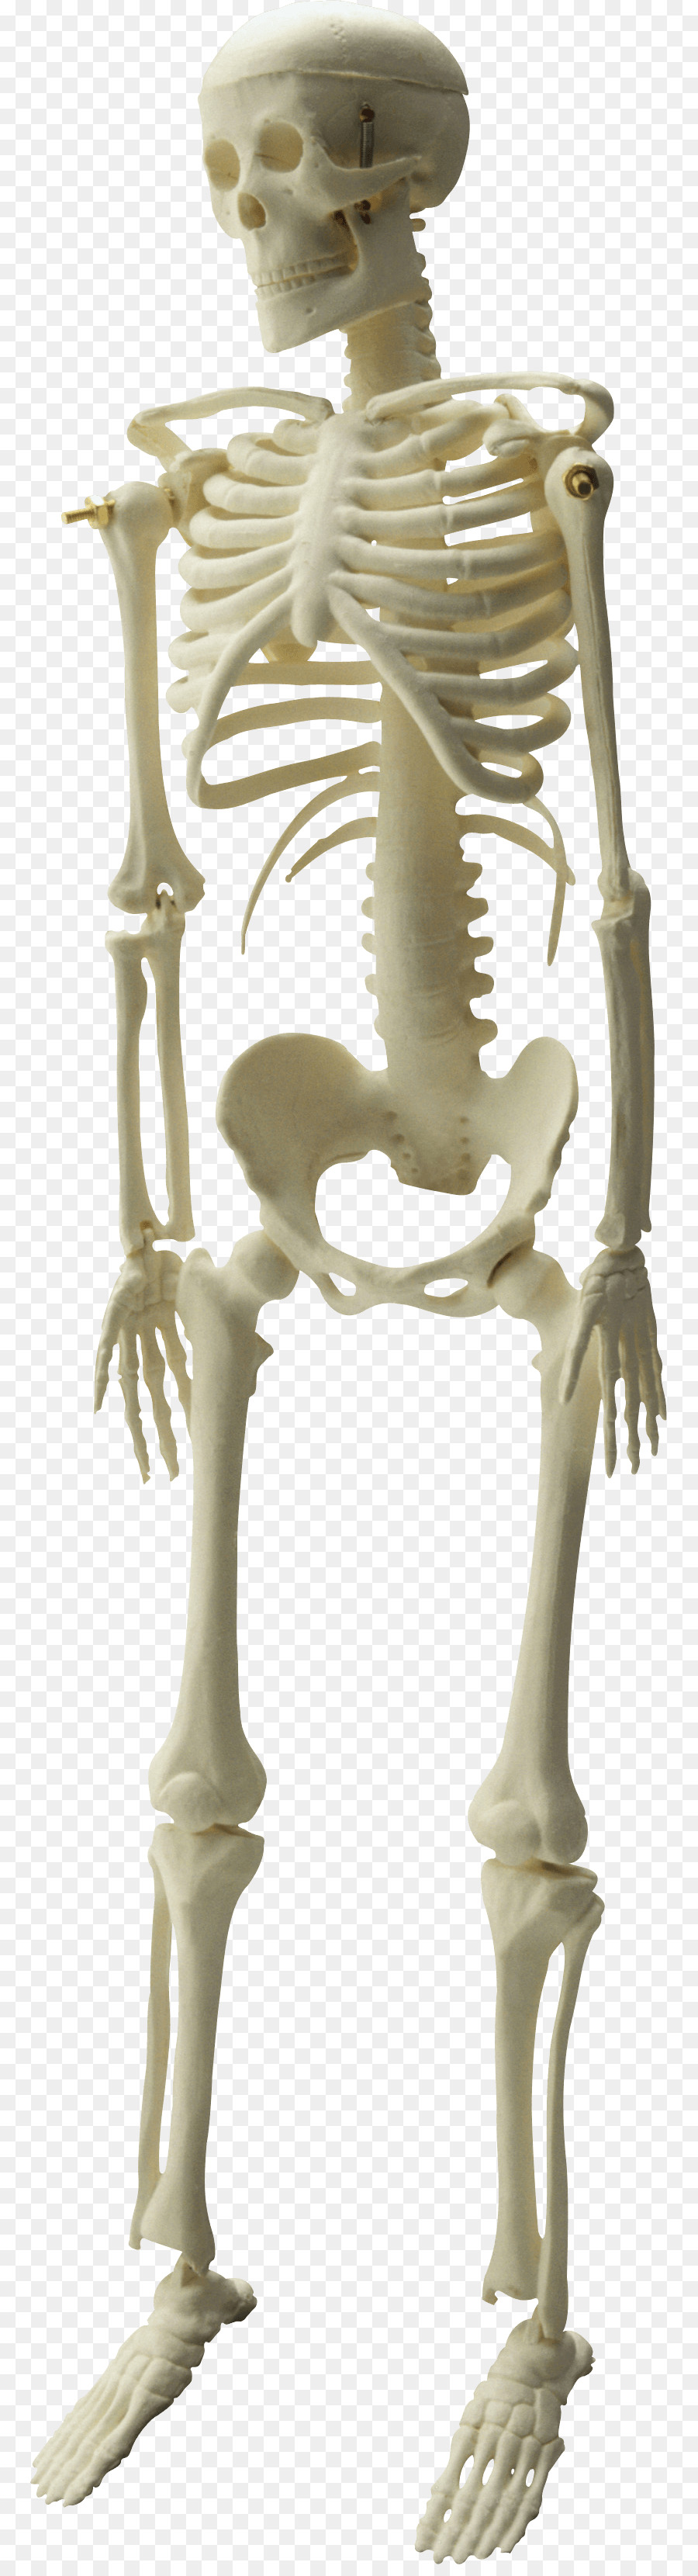 Skelett-Image-Datei-Formate Clip-art - Skelett